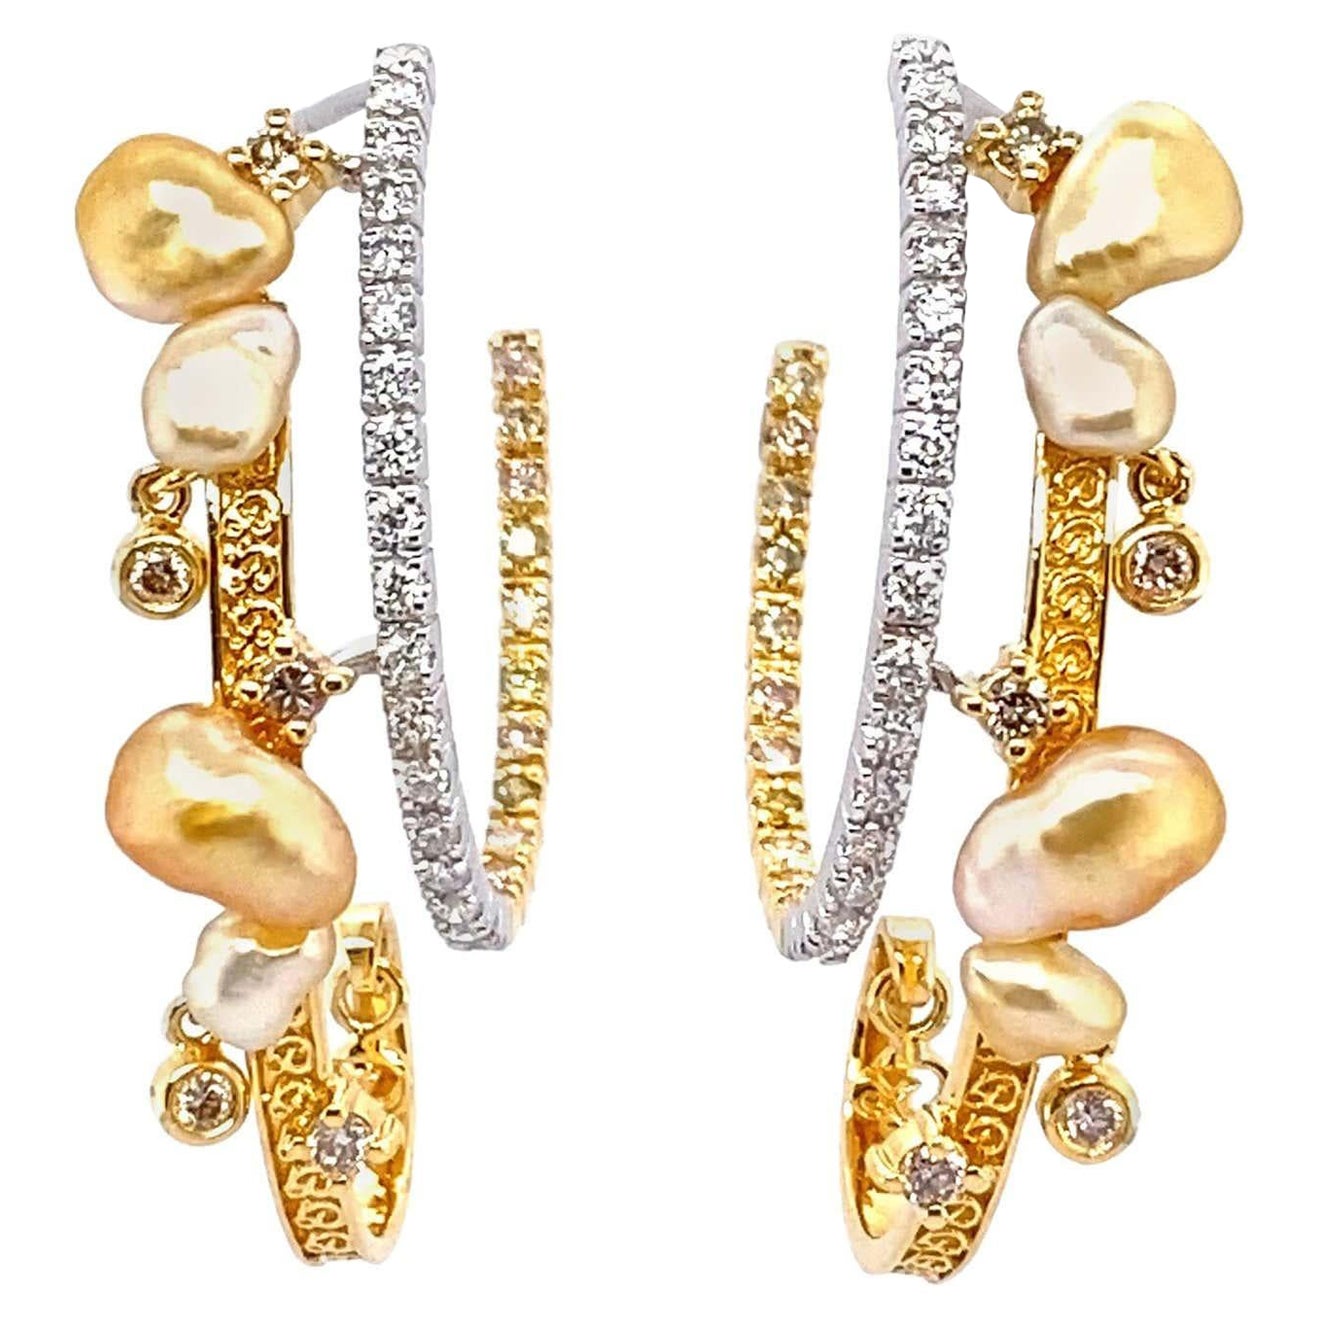 Keshi Pearl and Diamonds Hoop Earrings in 18 Karat Gold